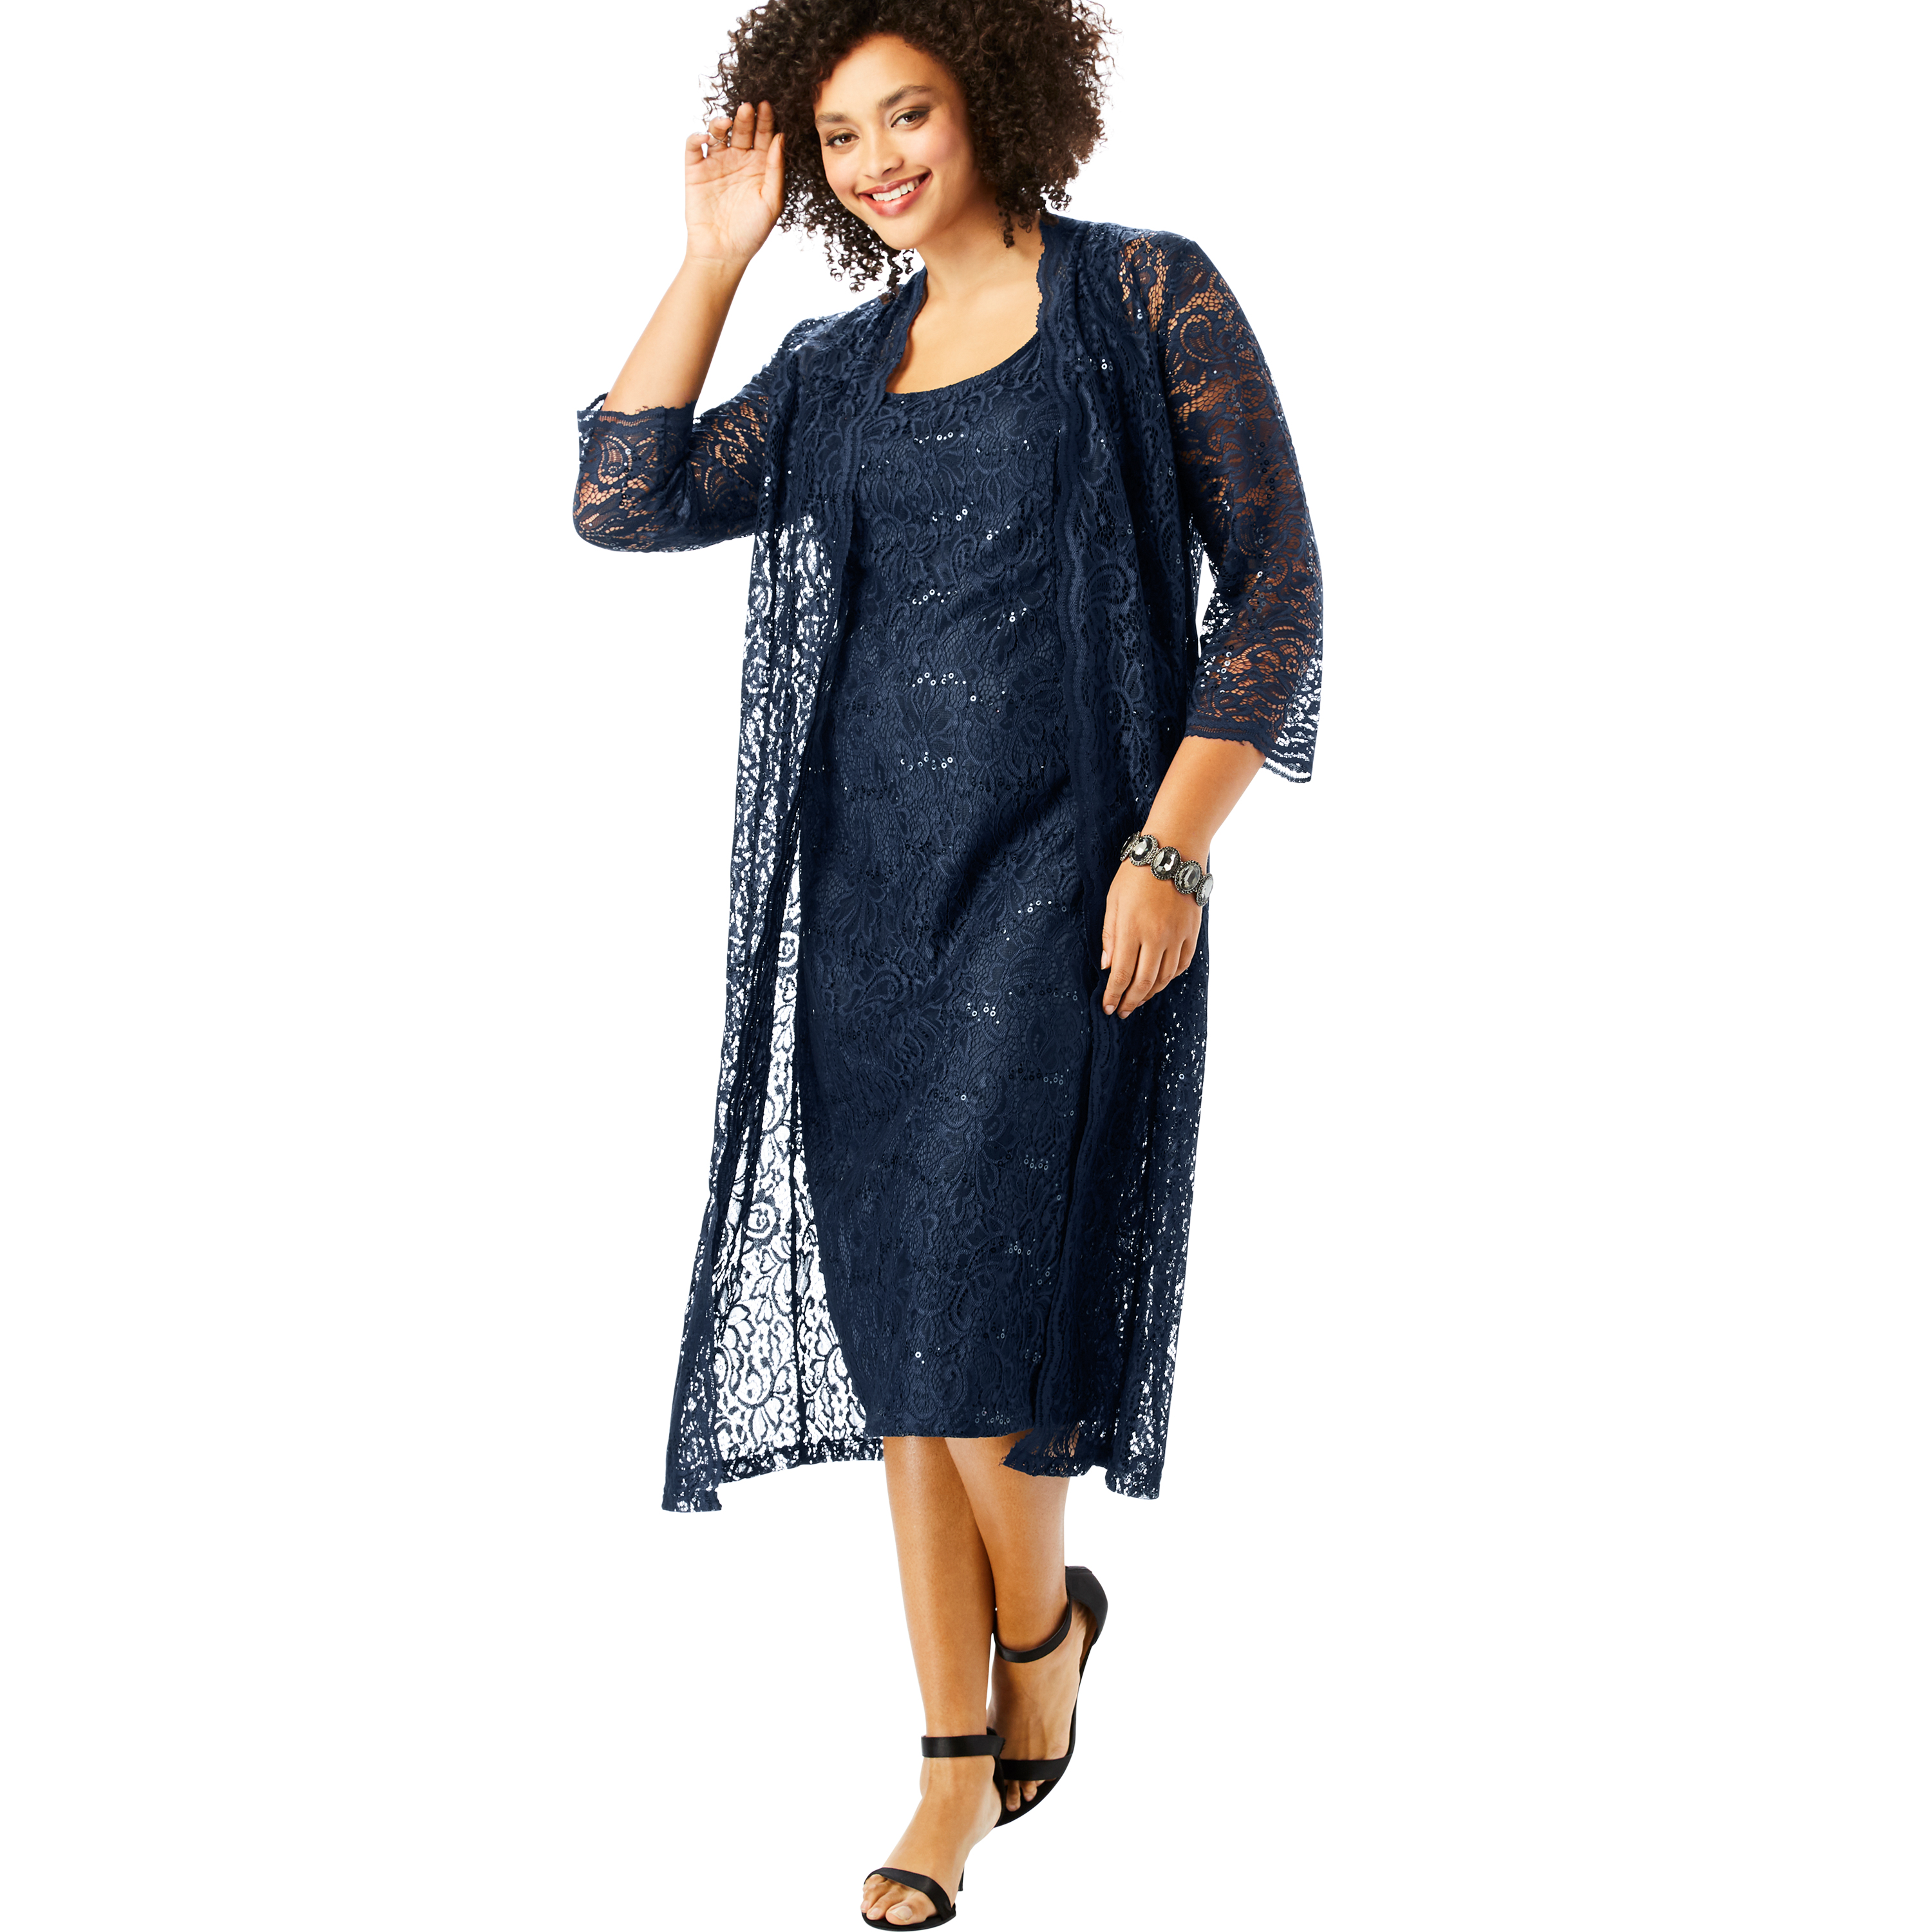 Roamans Womens Plus Size Lace /& Sequin Jacket Dress Set Formal Evening